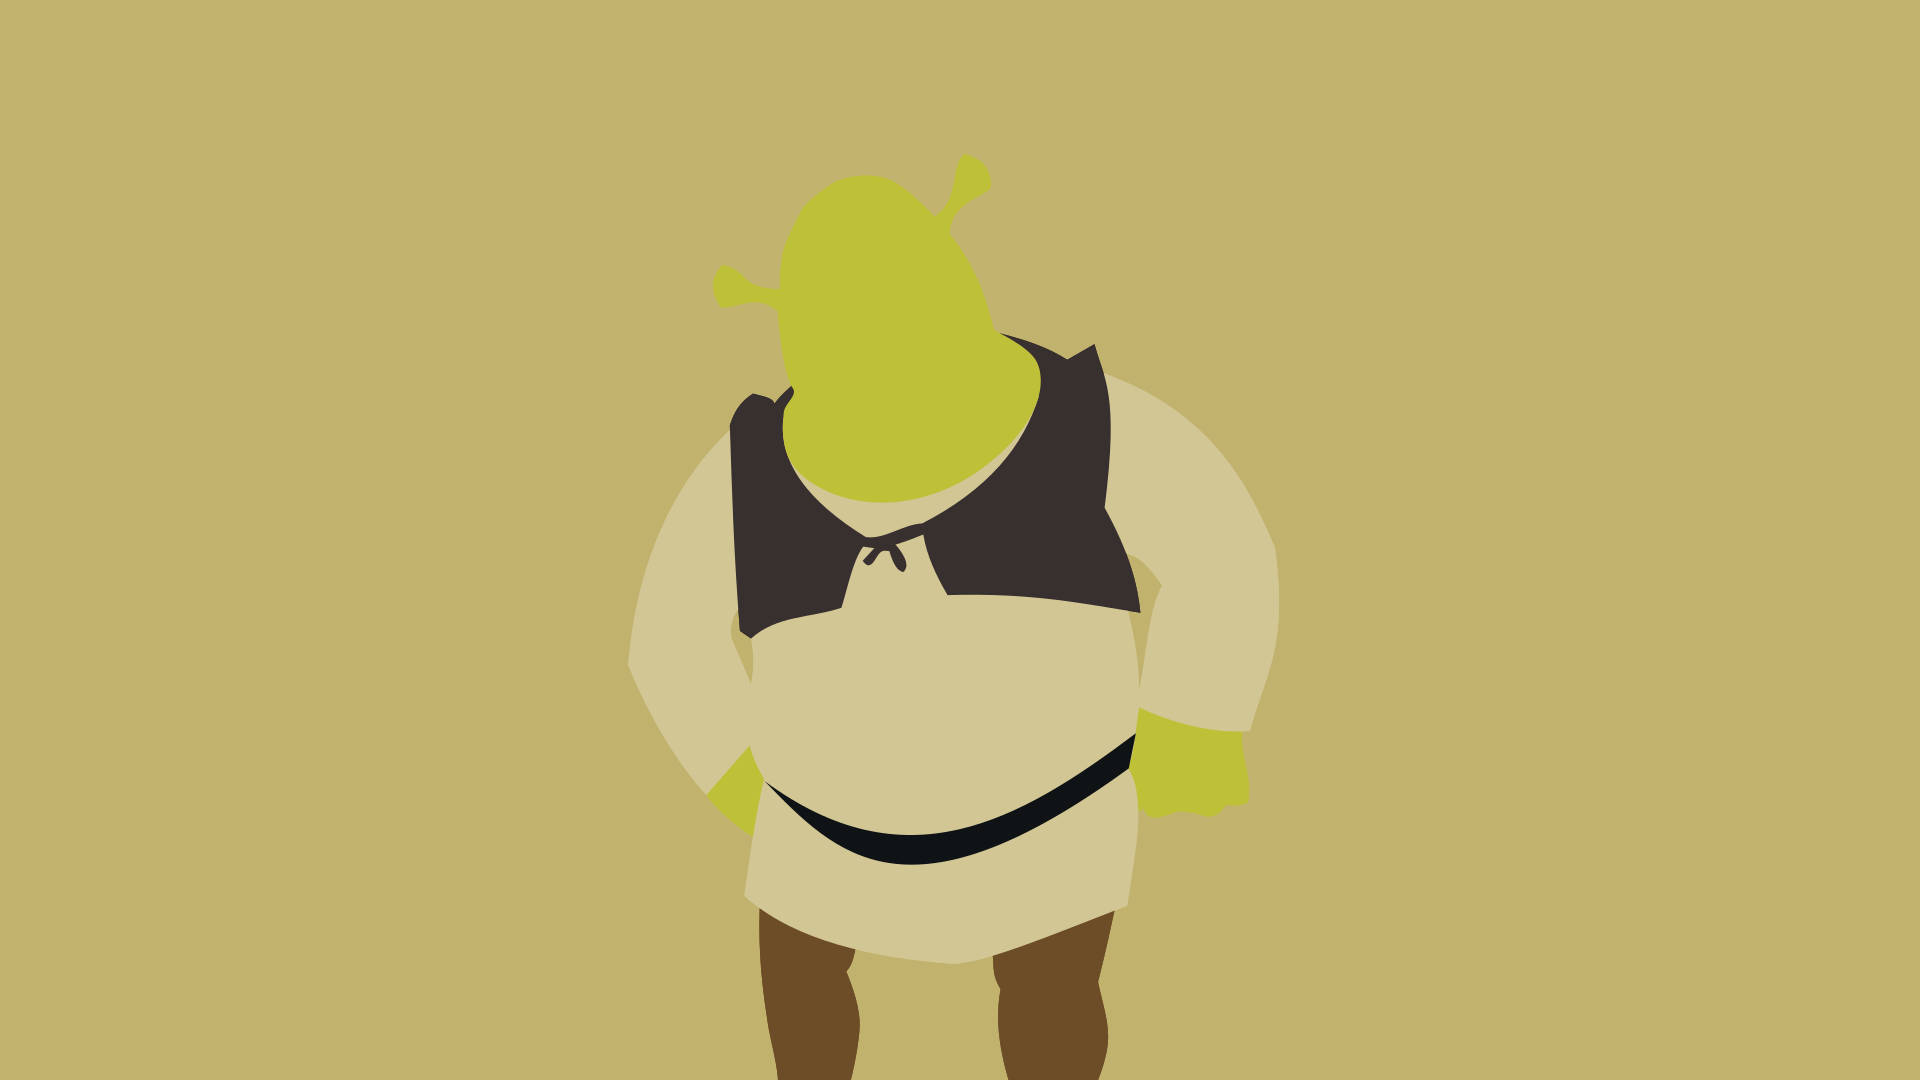 Free Shrek Wallpaper Downloads, Shrek Wallpaper for FREE